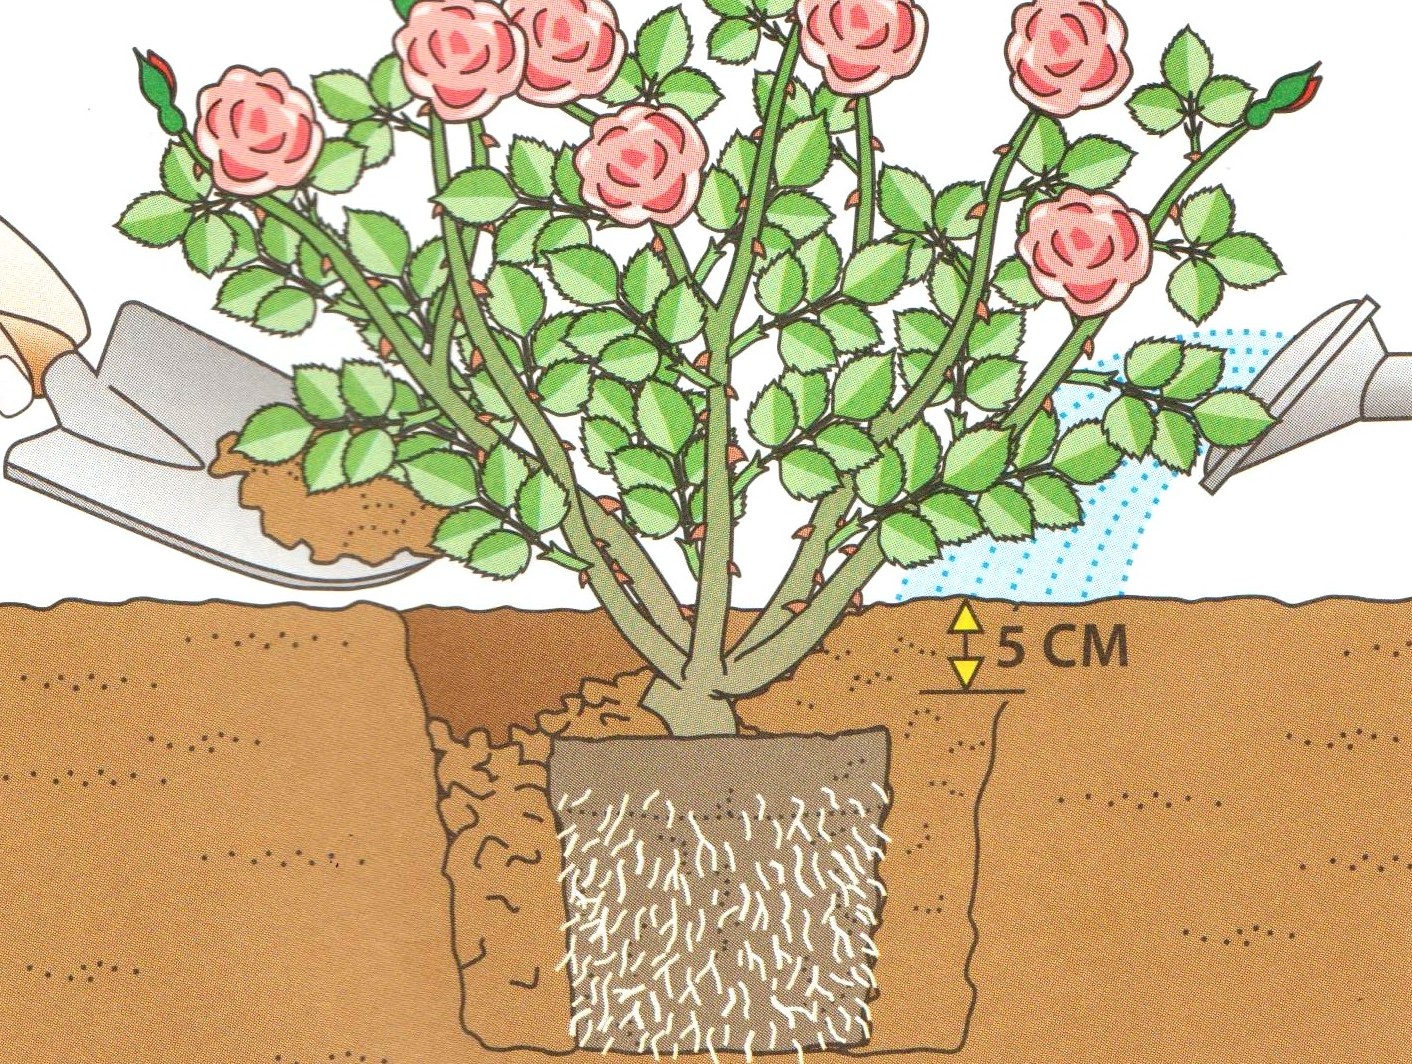 Как правильно посадить саженец розы. Посадка плетистой розы весной. Саженец плетистой розы. Высадка роз в грунт весной.